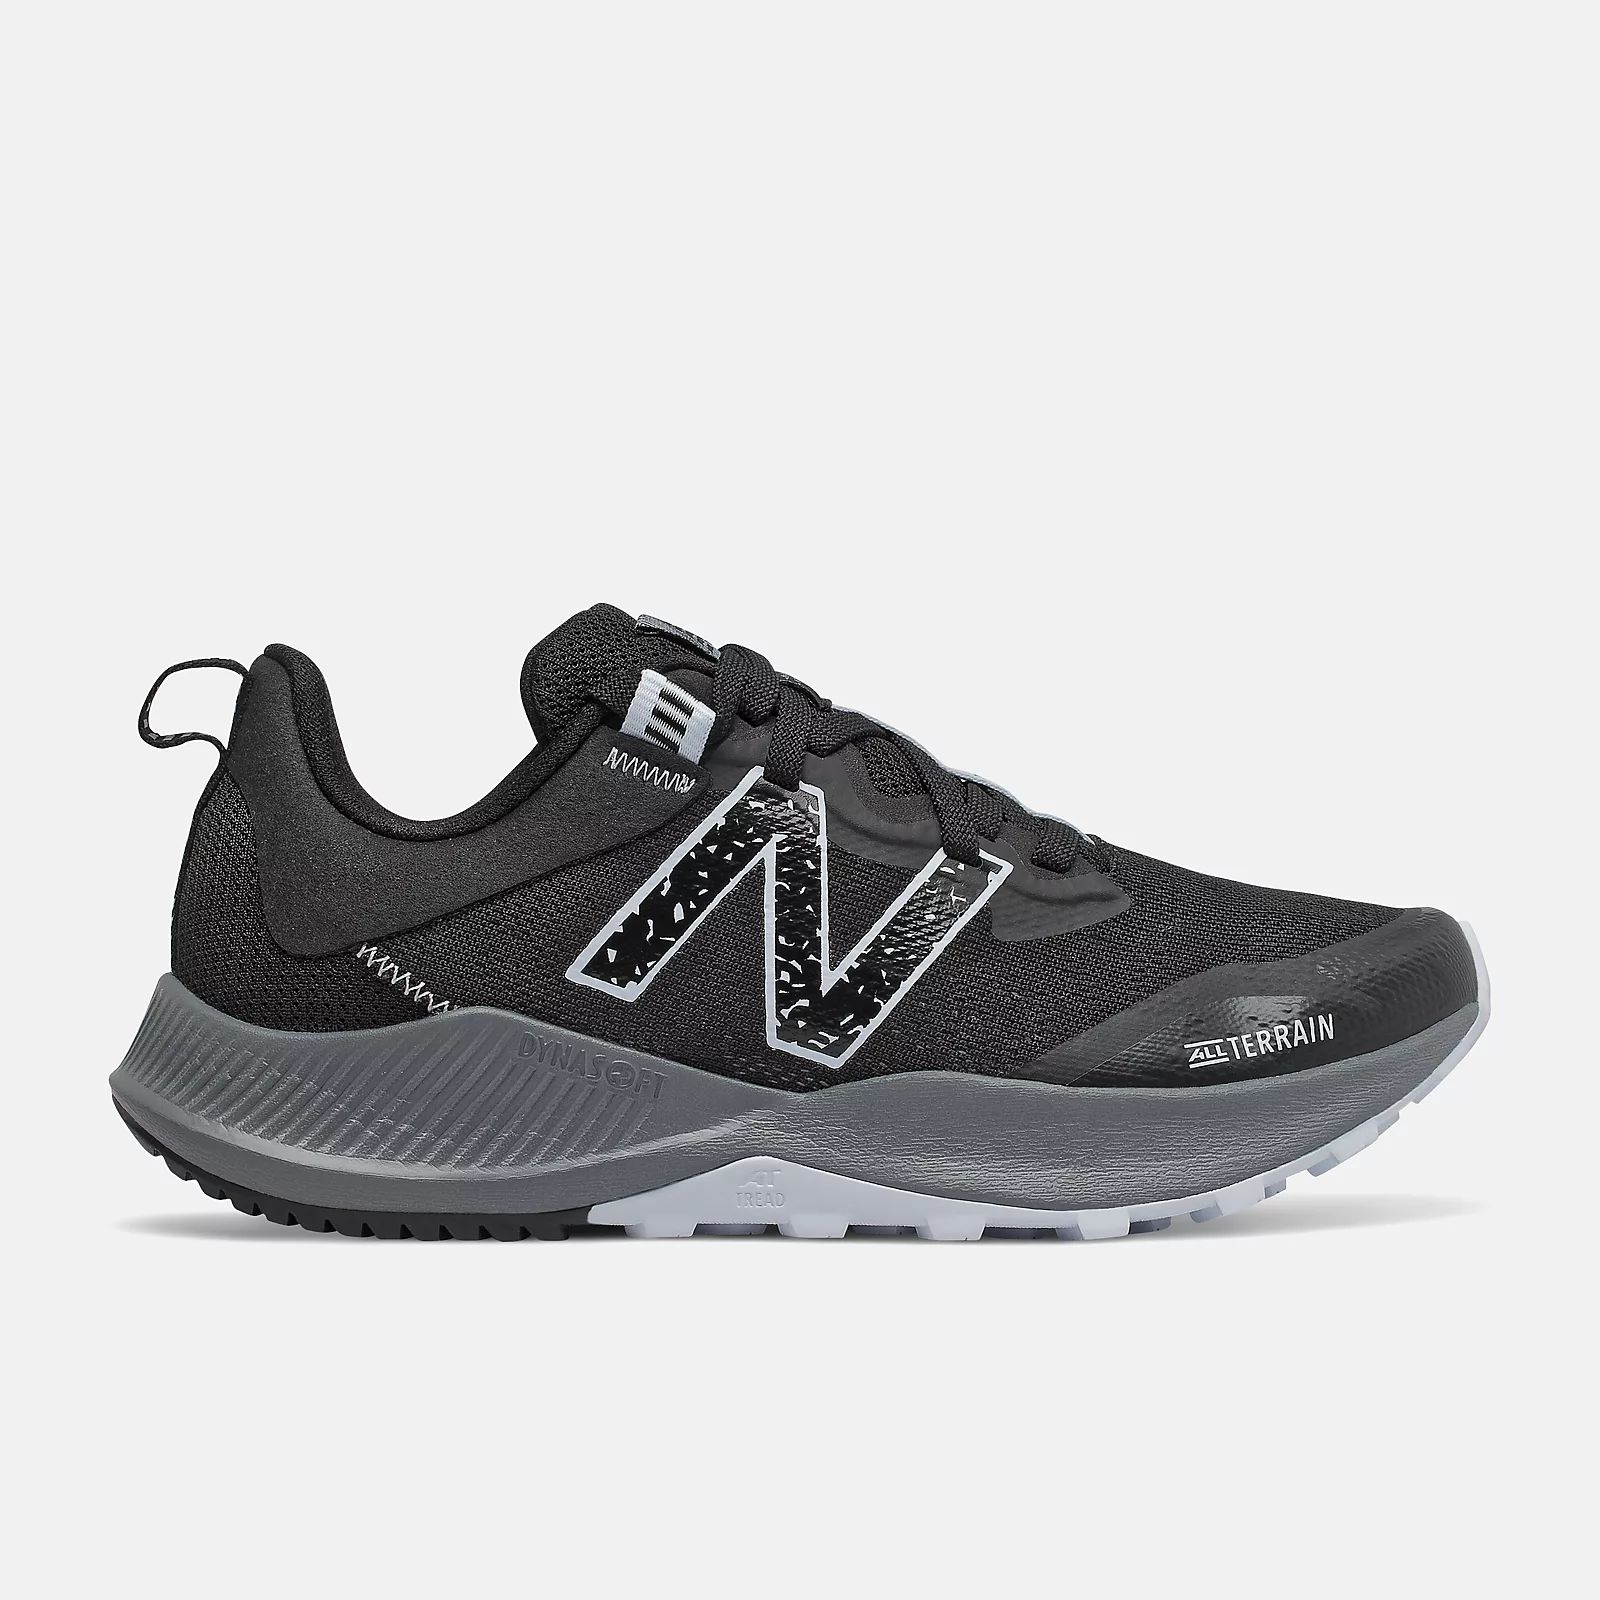 NITRELv4 | New Balance Athletic Shoe